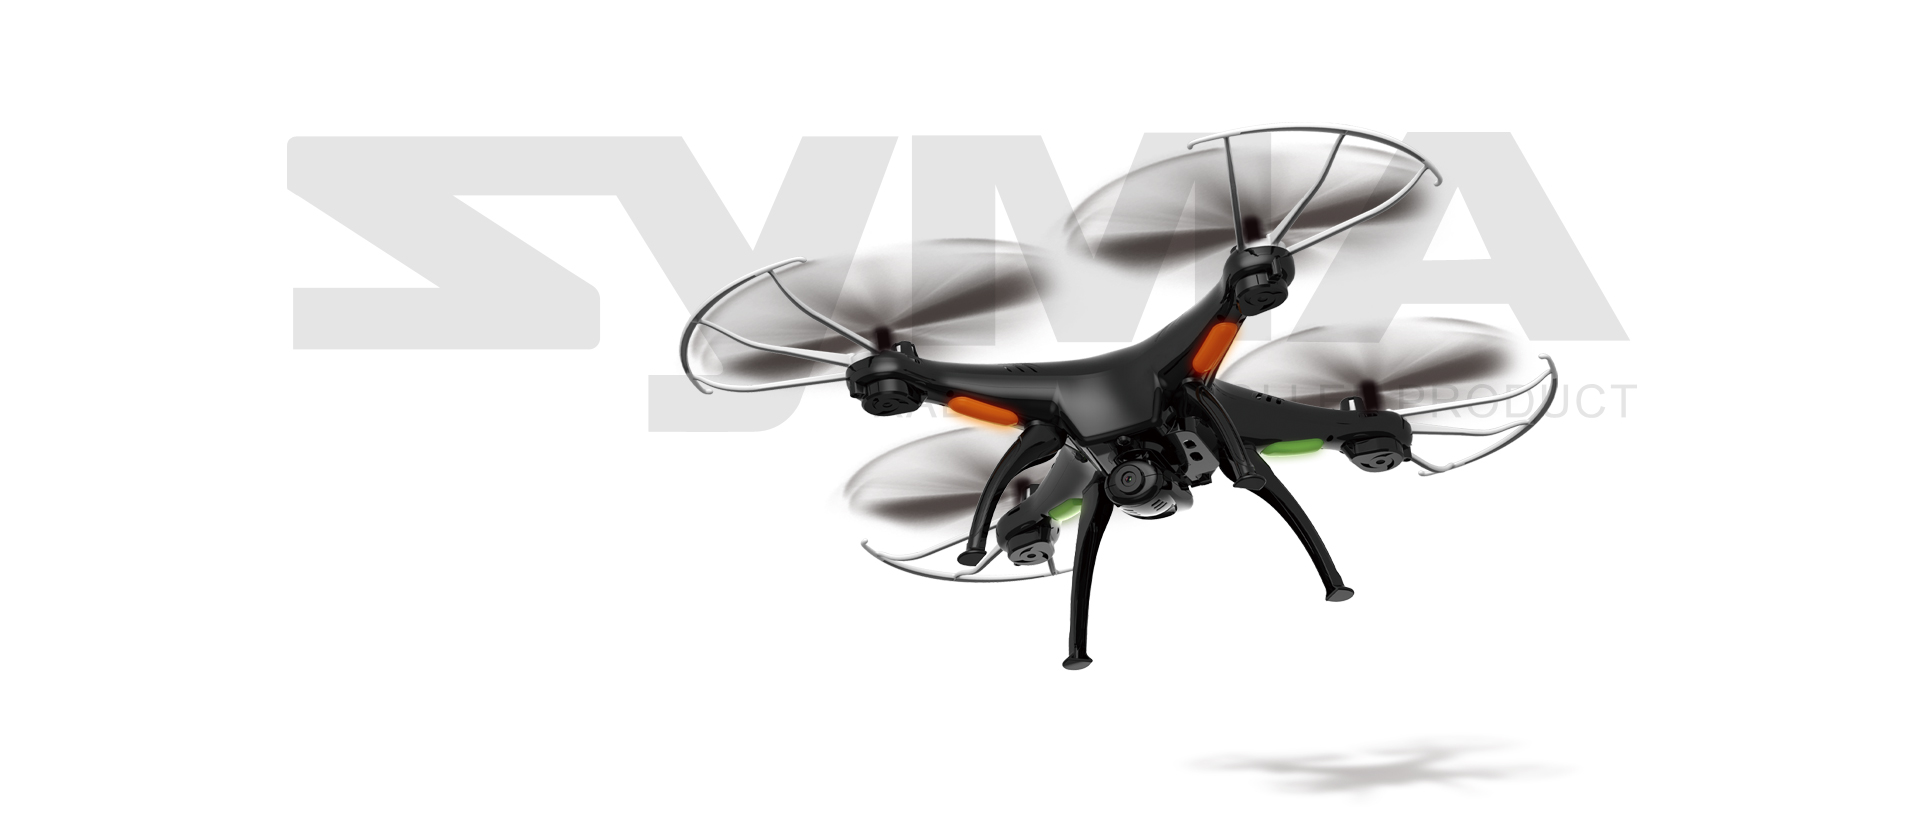 drona syma x5sw